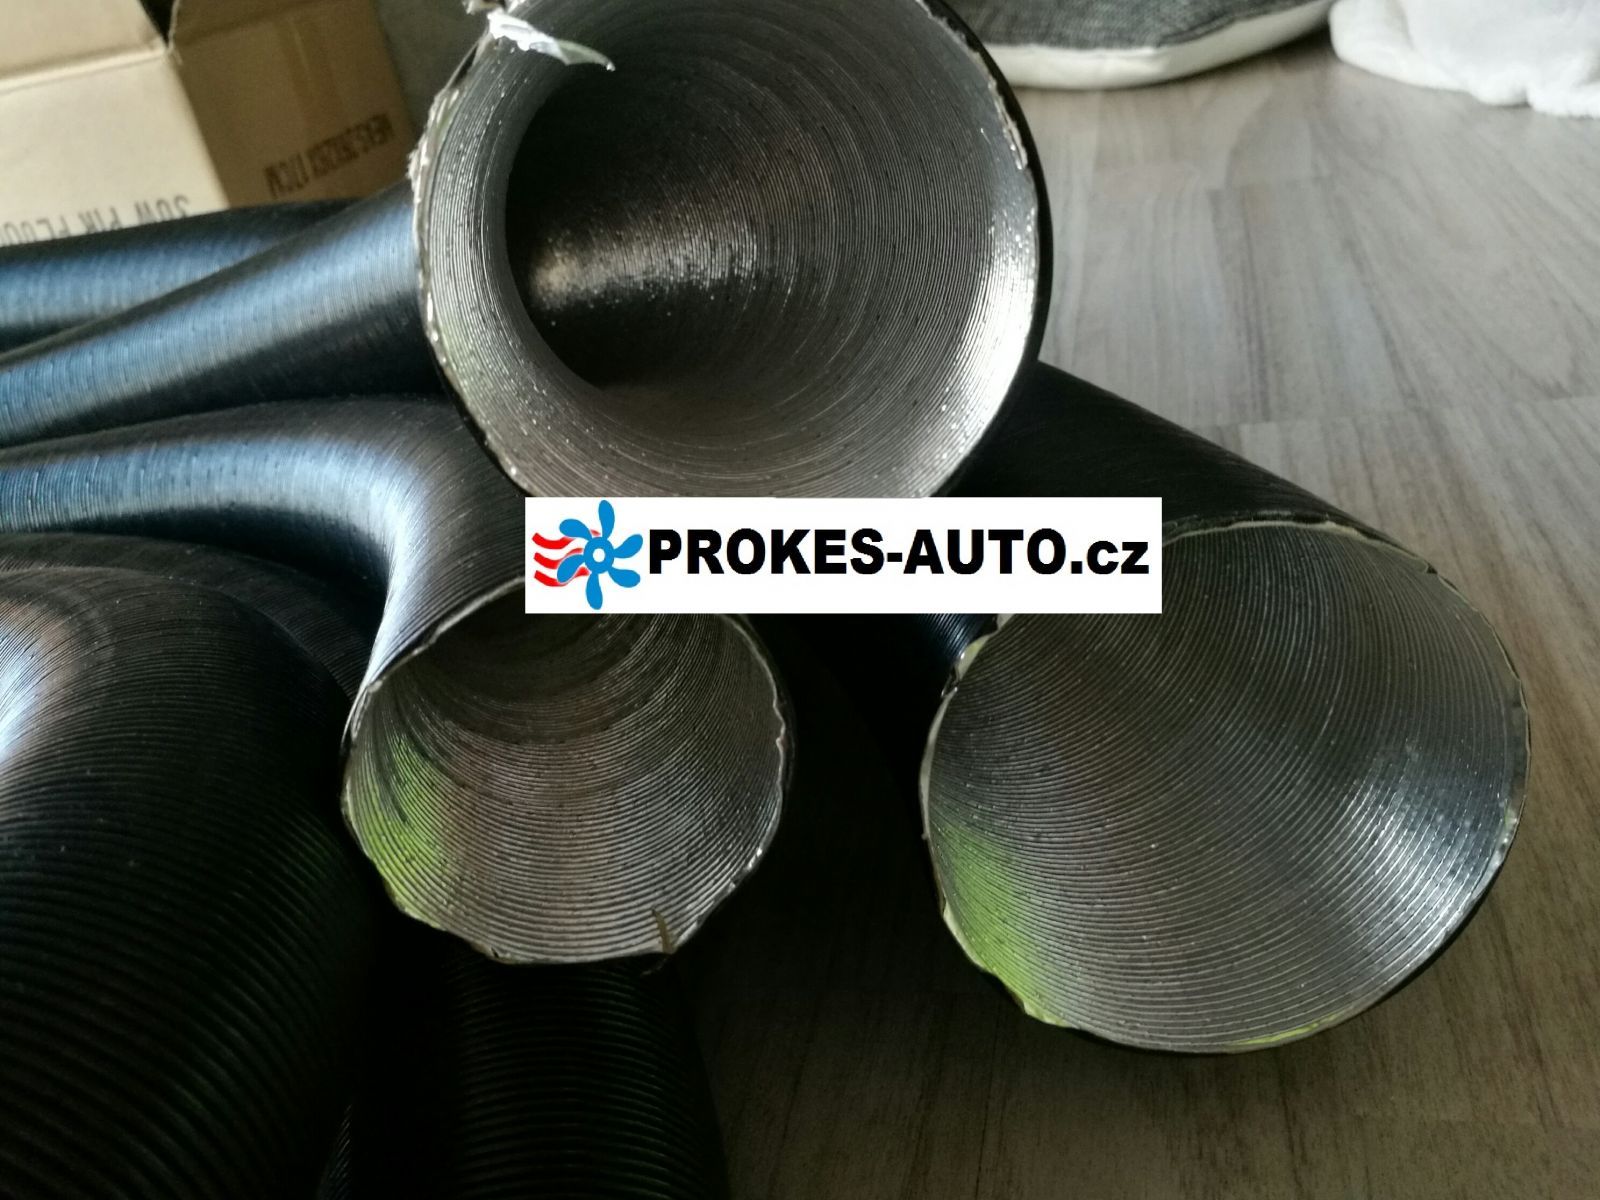 Flexible tube hot air D 90mm / APK aluminium, paper, plastic / 90395A / 102114370000 / APK90